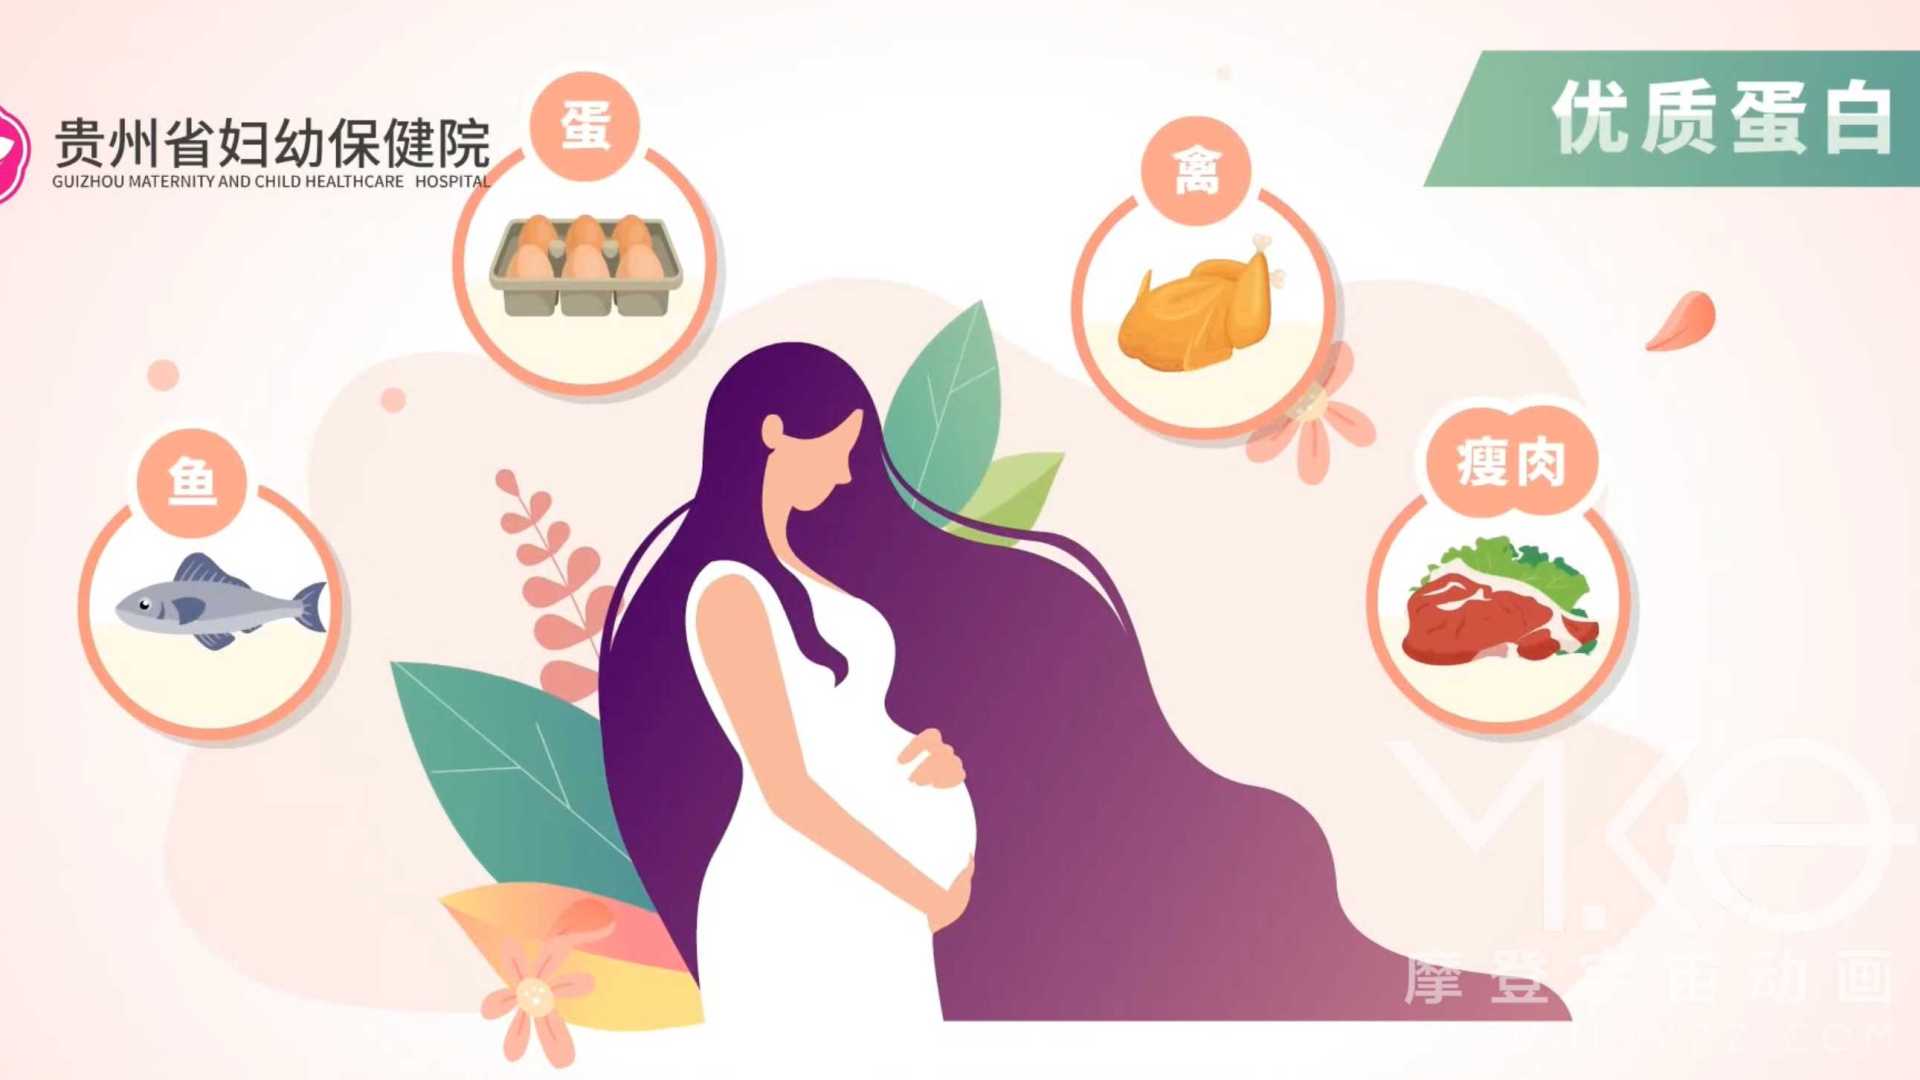 贵州妇幼保健院-孕期营养医疗科普动画- MG动画项目